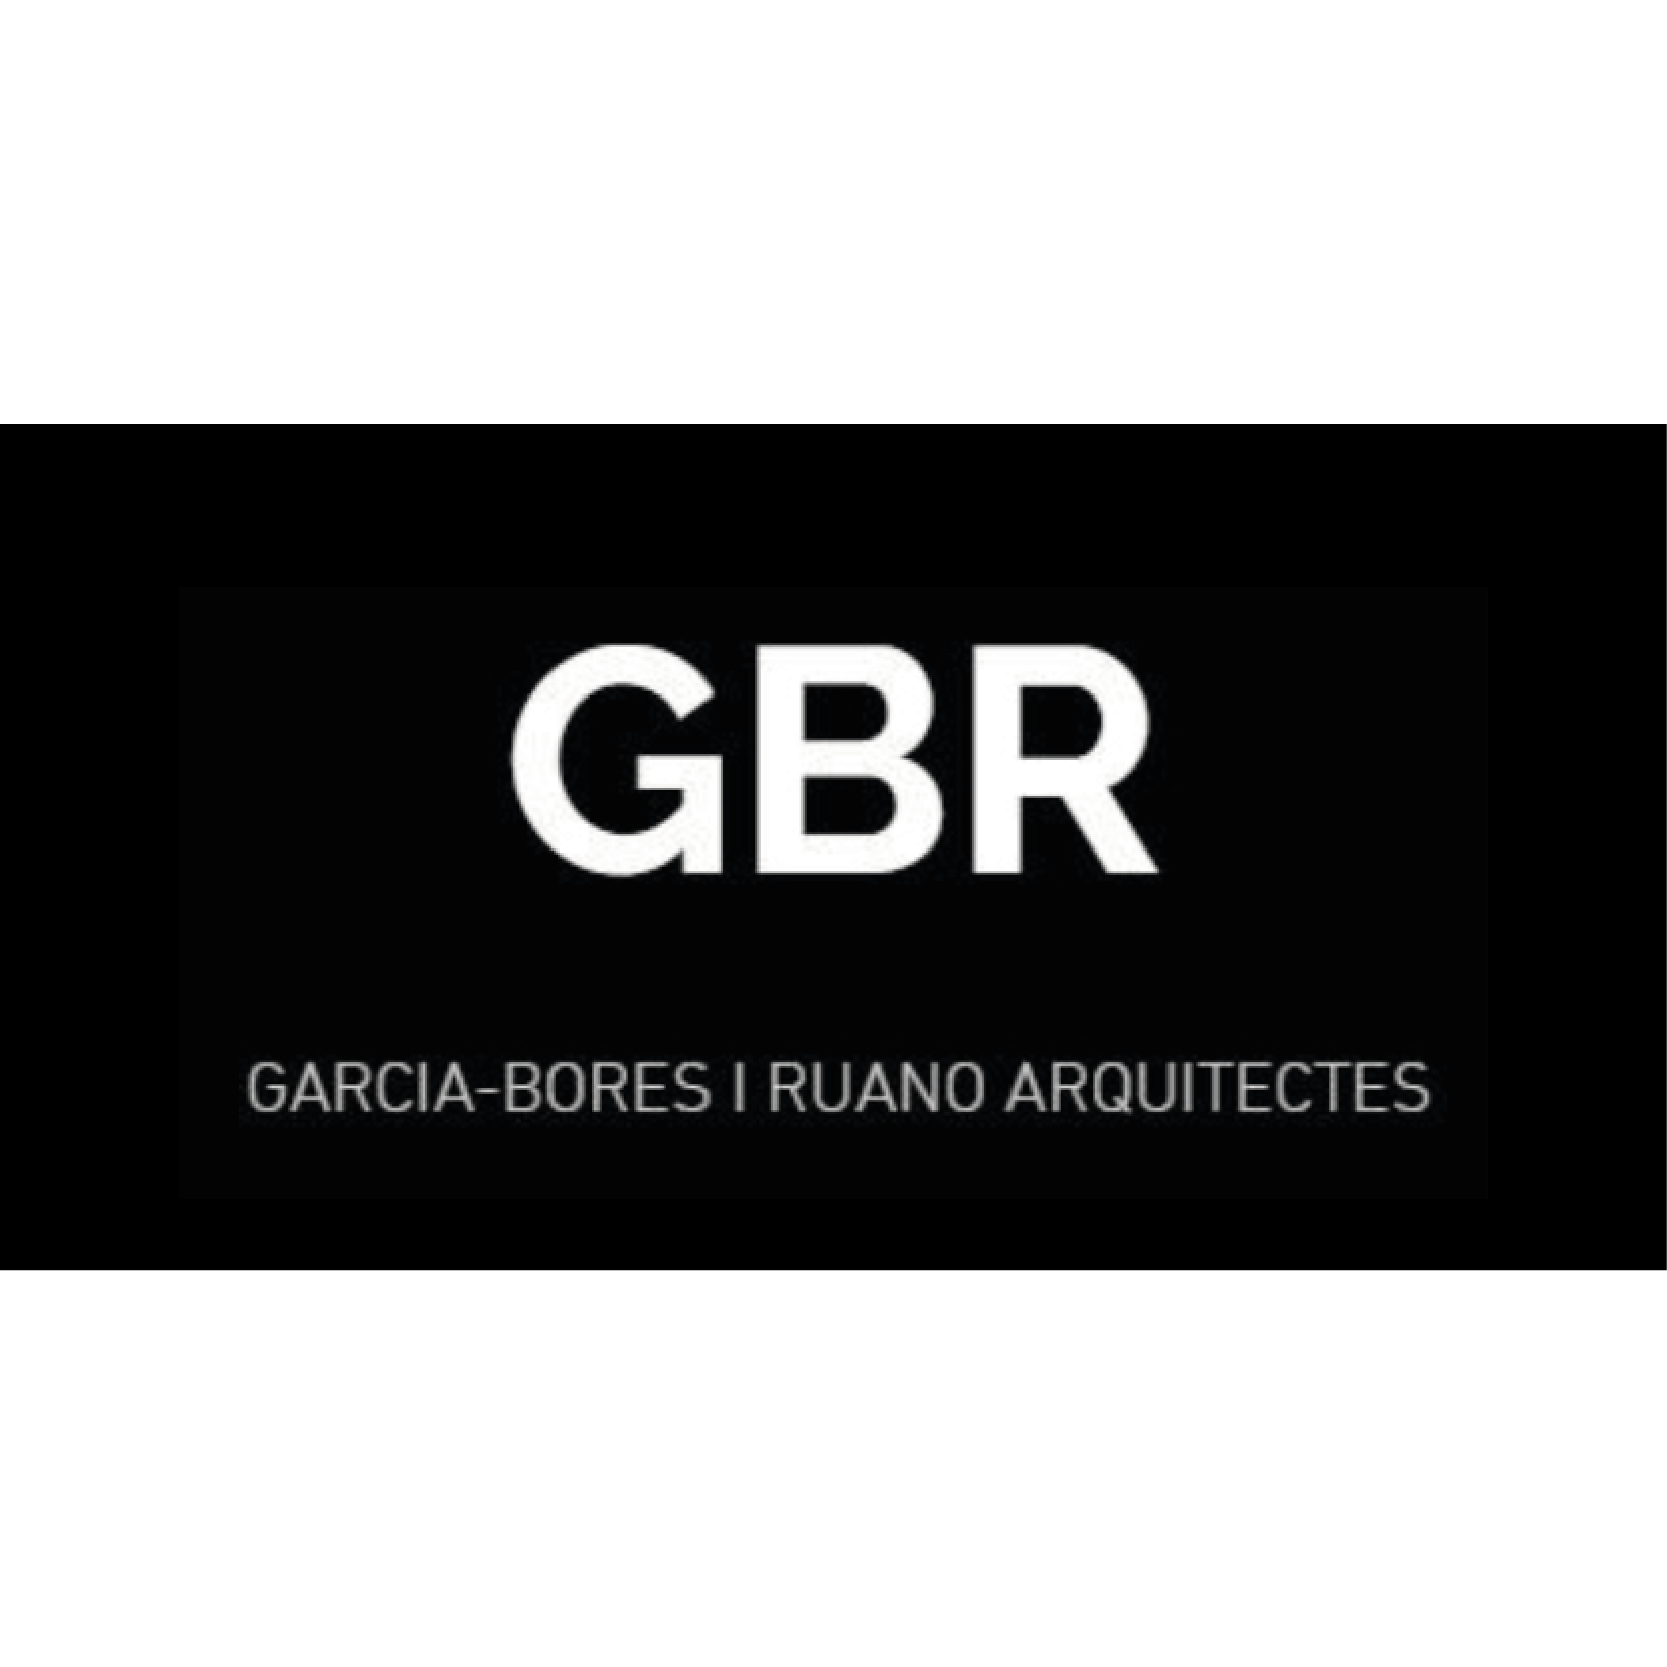 Logo GBR Garcia-Bores | Ruano Arquitectes